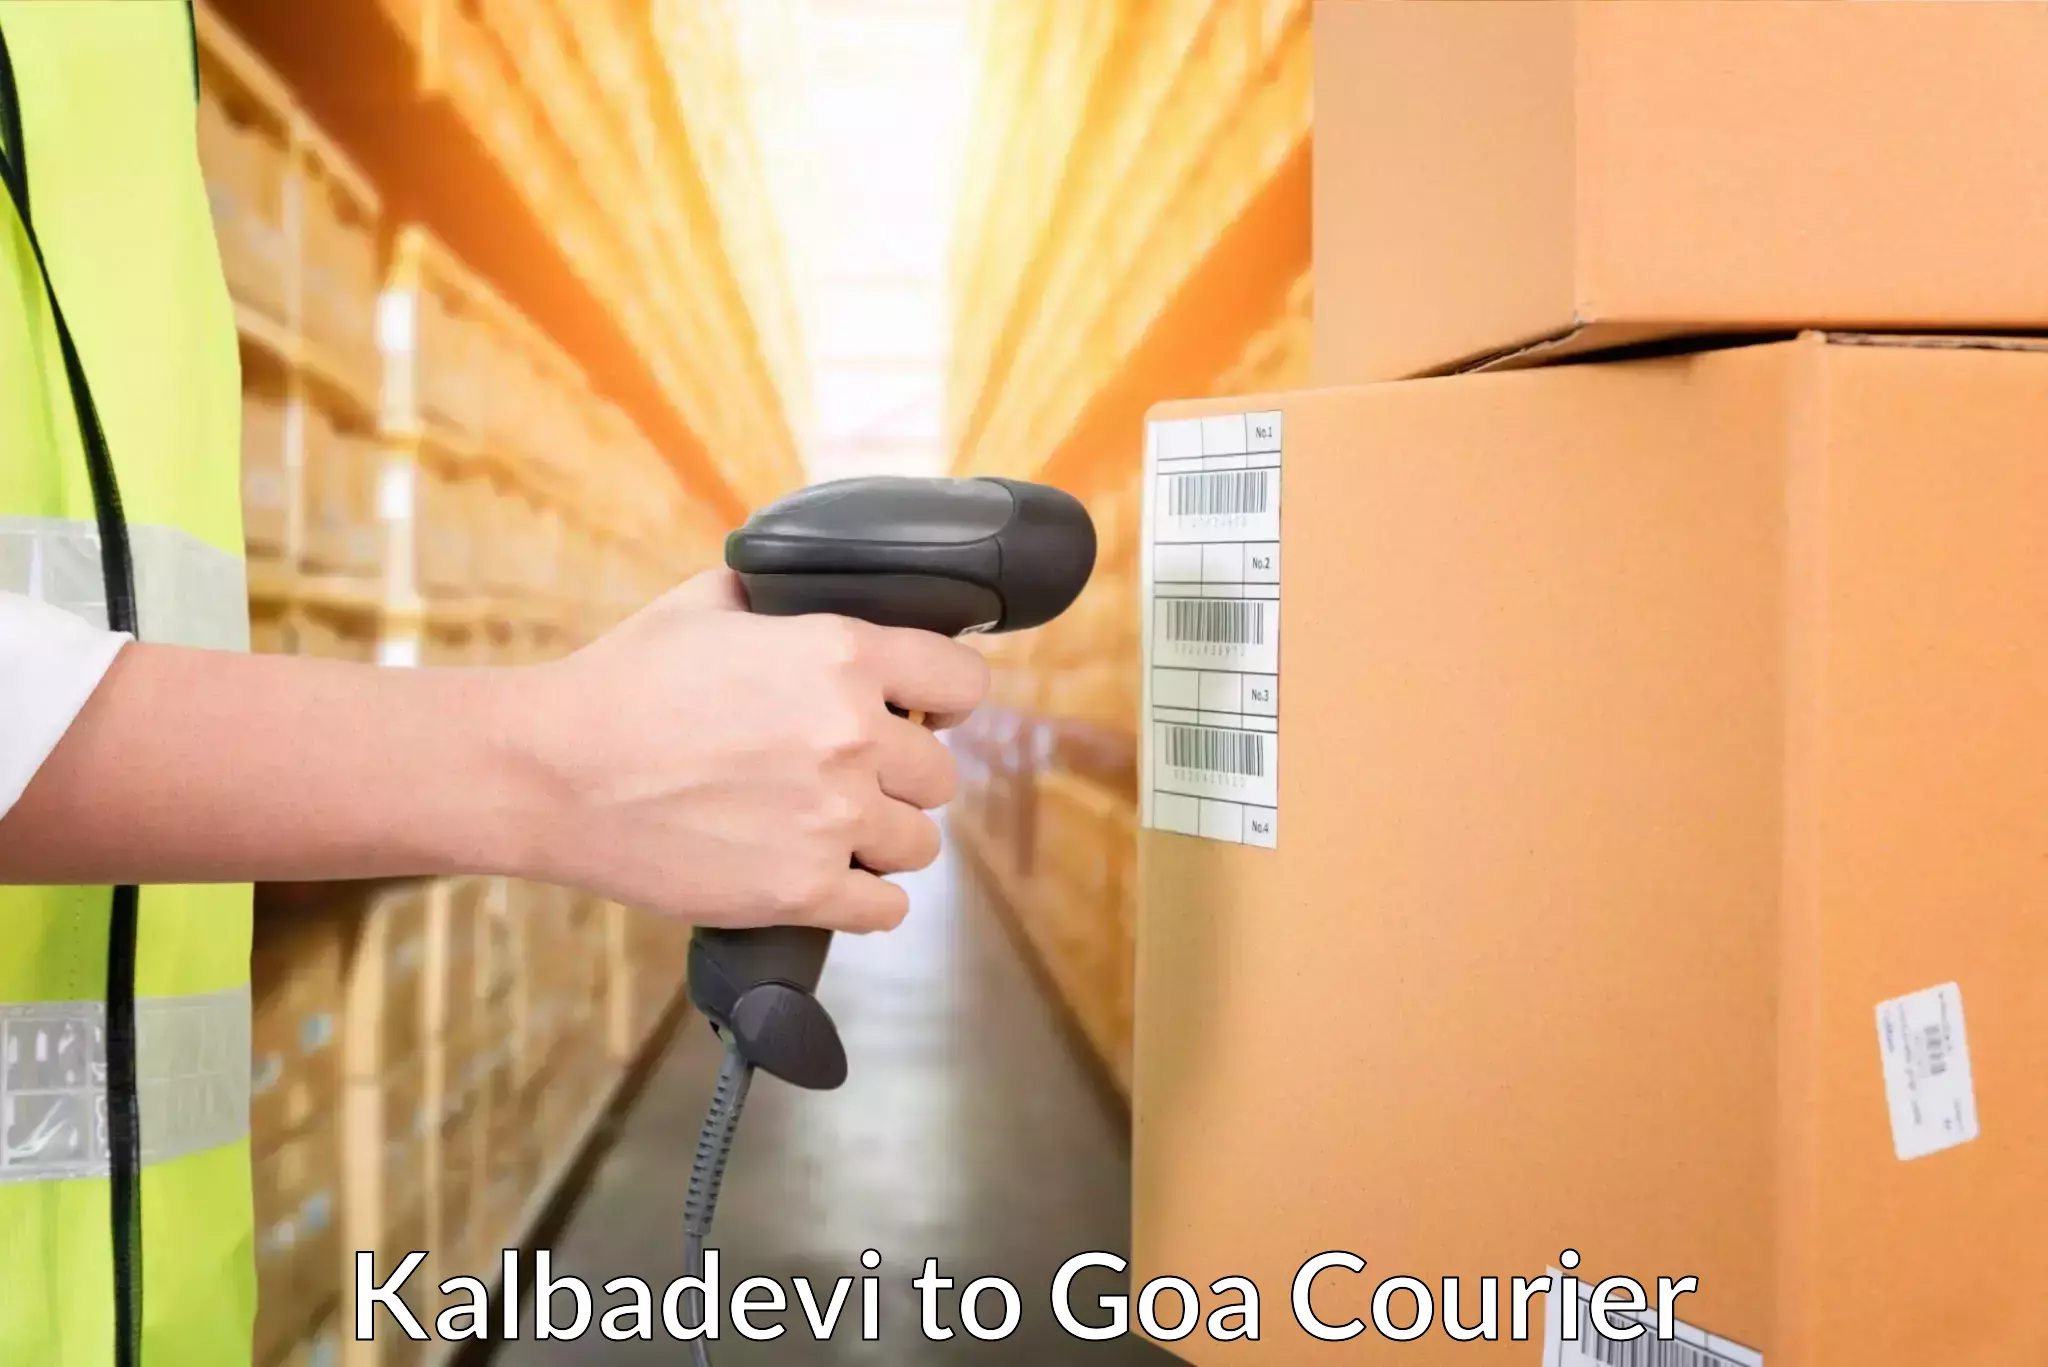 Ocean freight courier Kalbadevi to IIT Goa